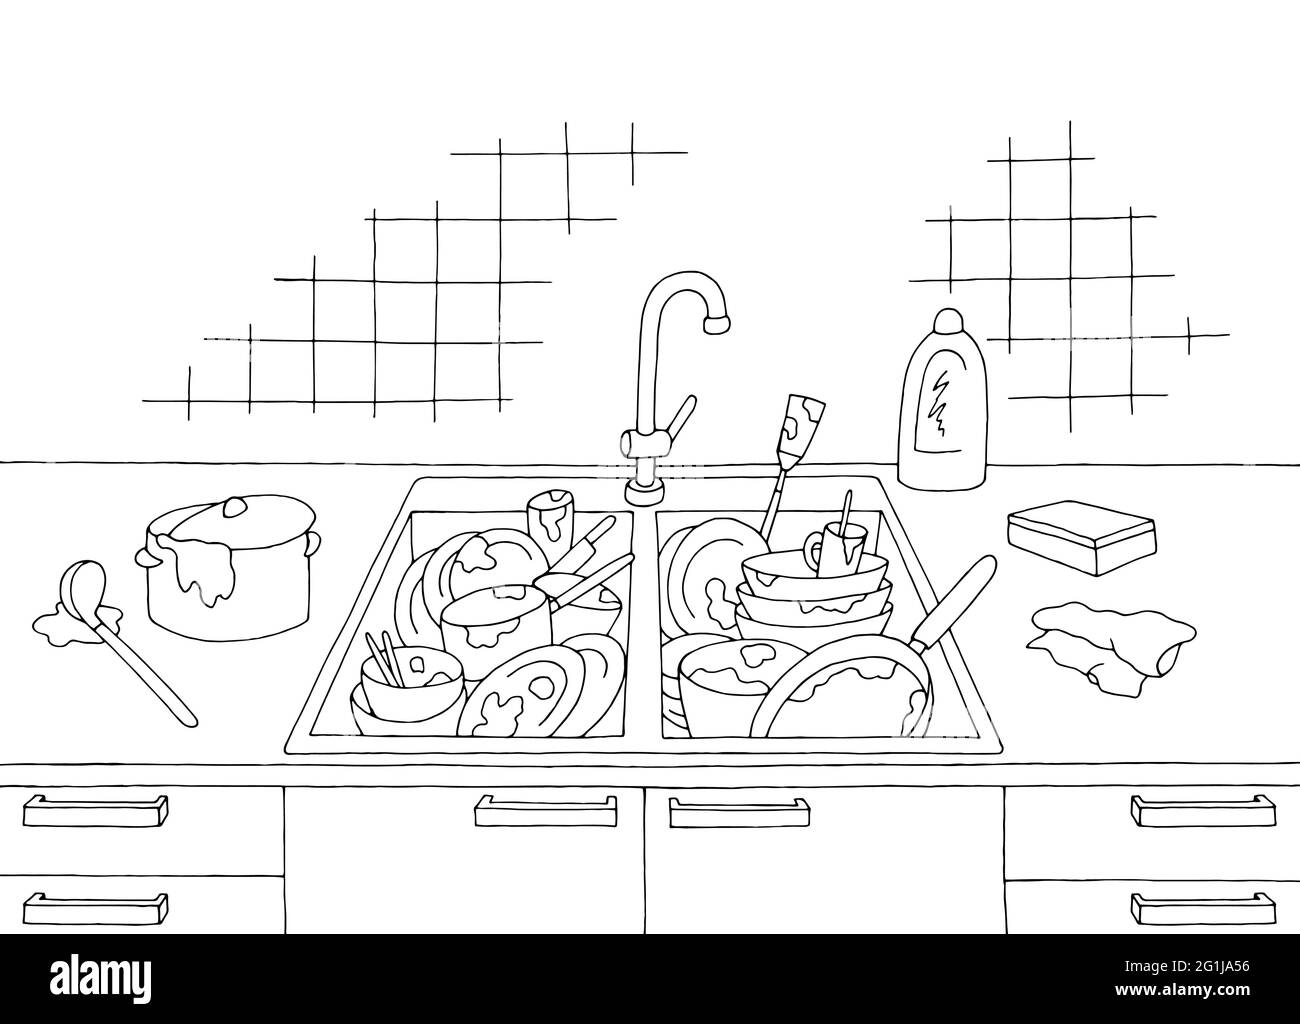 Schmutziges Geschirr im Waschbecken Küche Chaos Zimmer Grafik schwarz weiß Haus Innenraum Skizze Illustration Vektor Stock Vektor